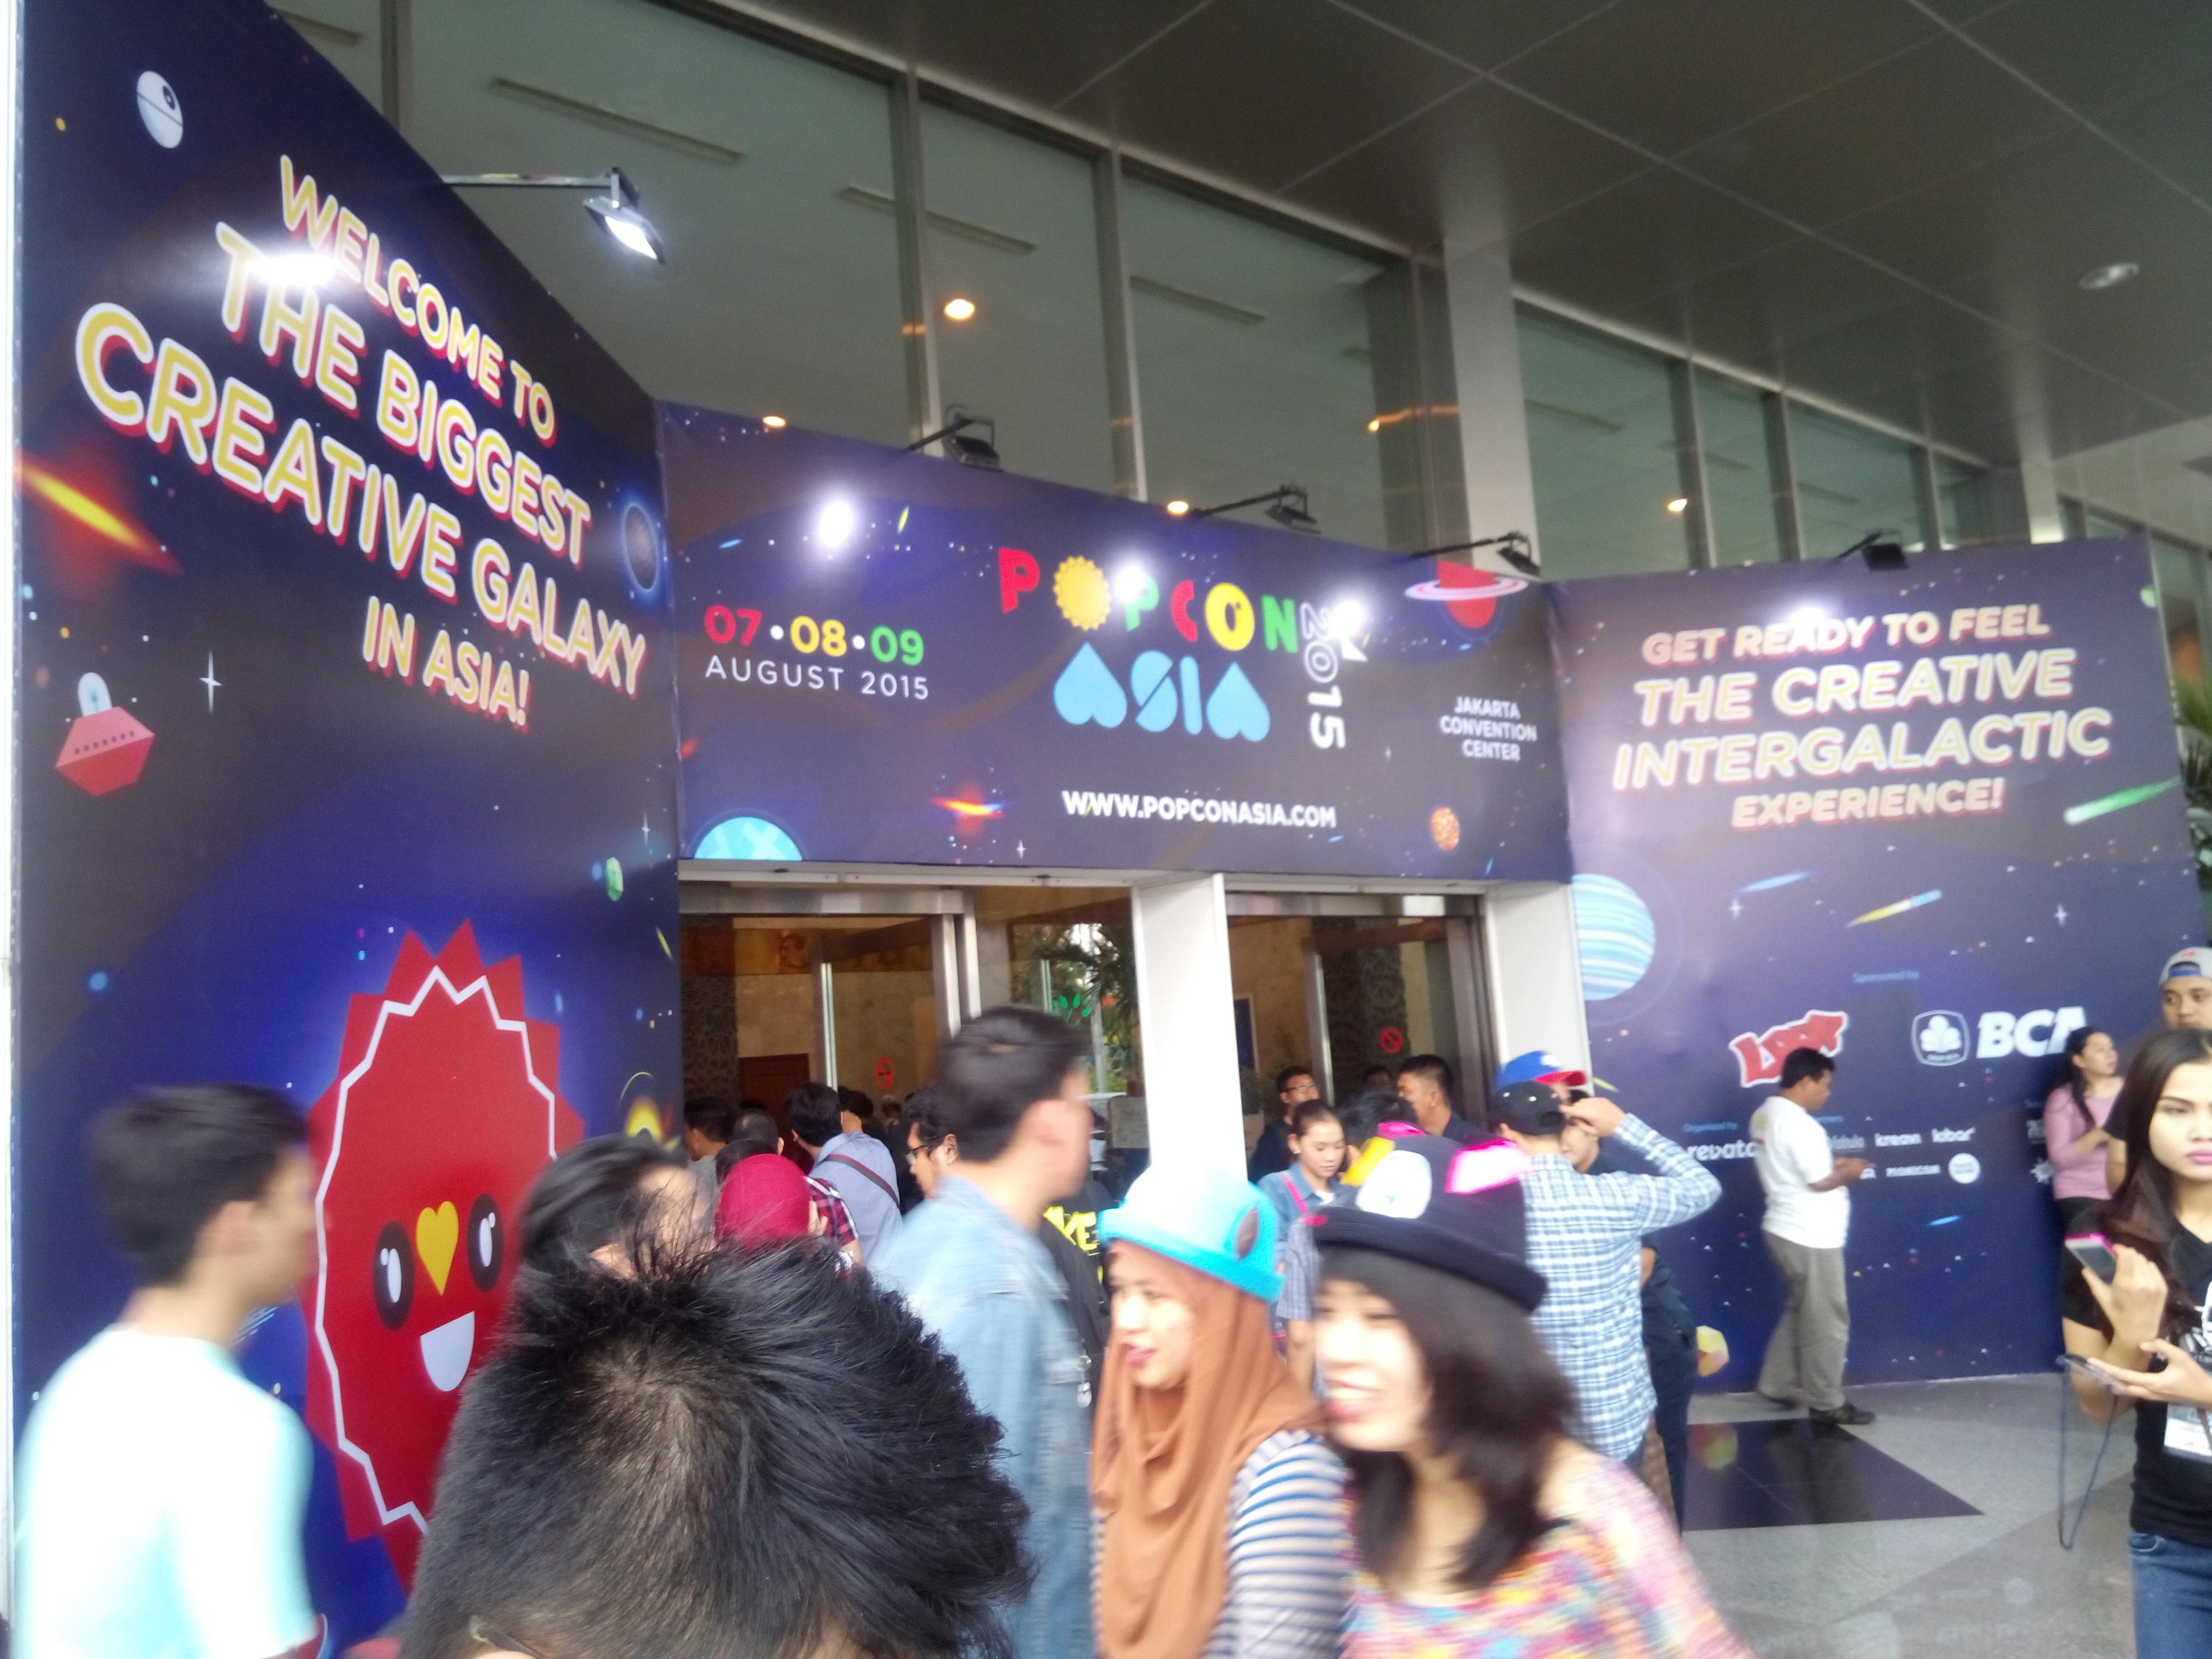 Inilah Keseruan Tim Indogamers di Acara Popcon Asia 2015!